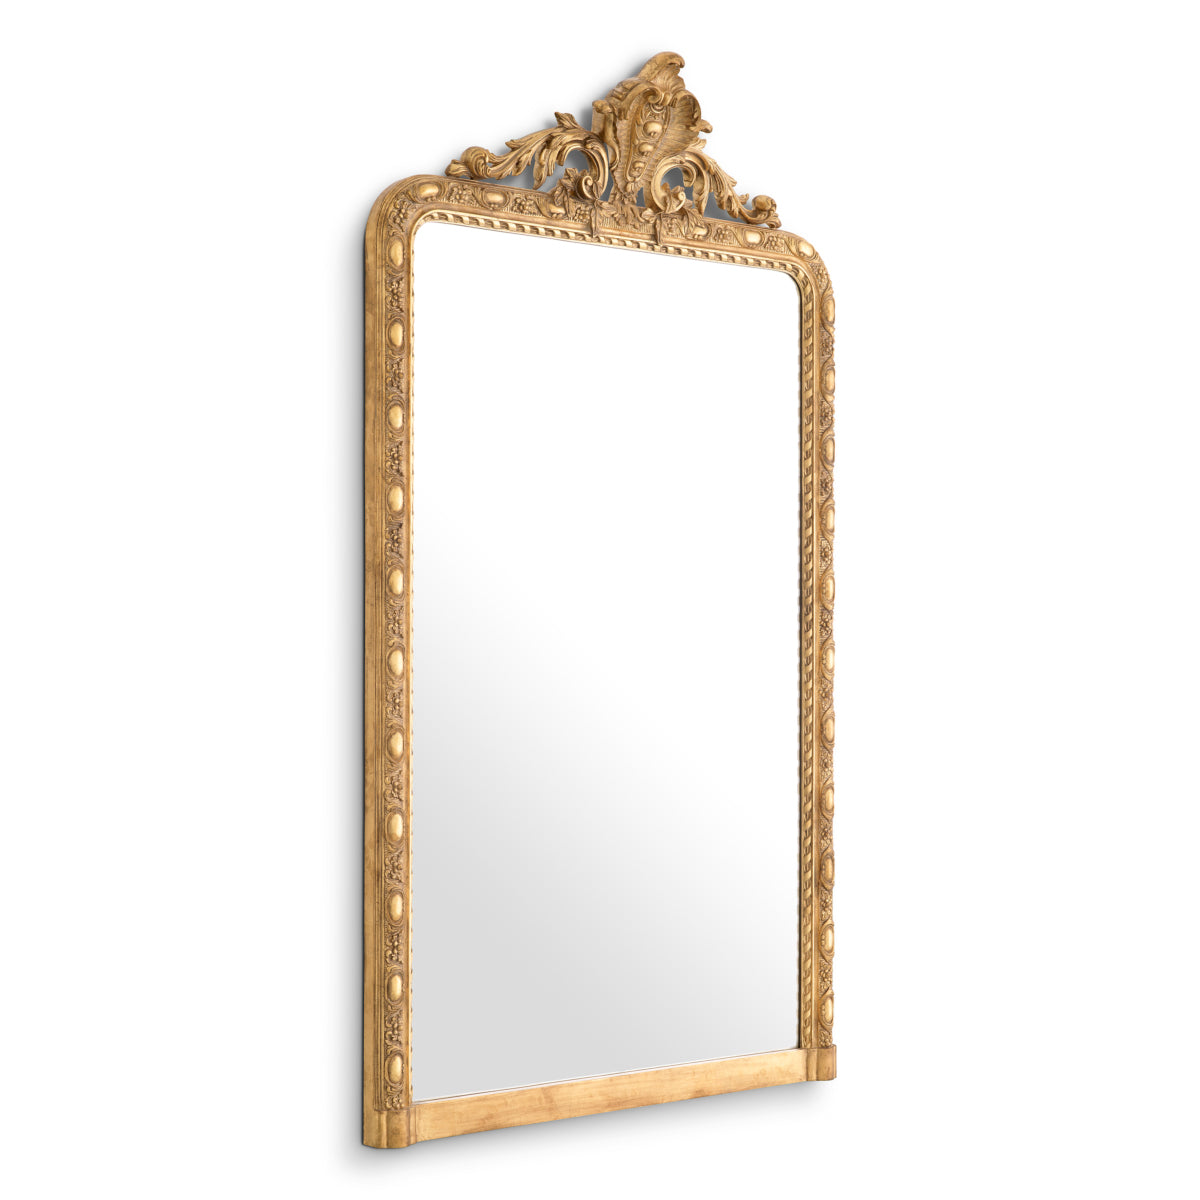 Mirror Eichholtz Ludovico spiegel